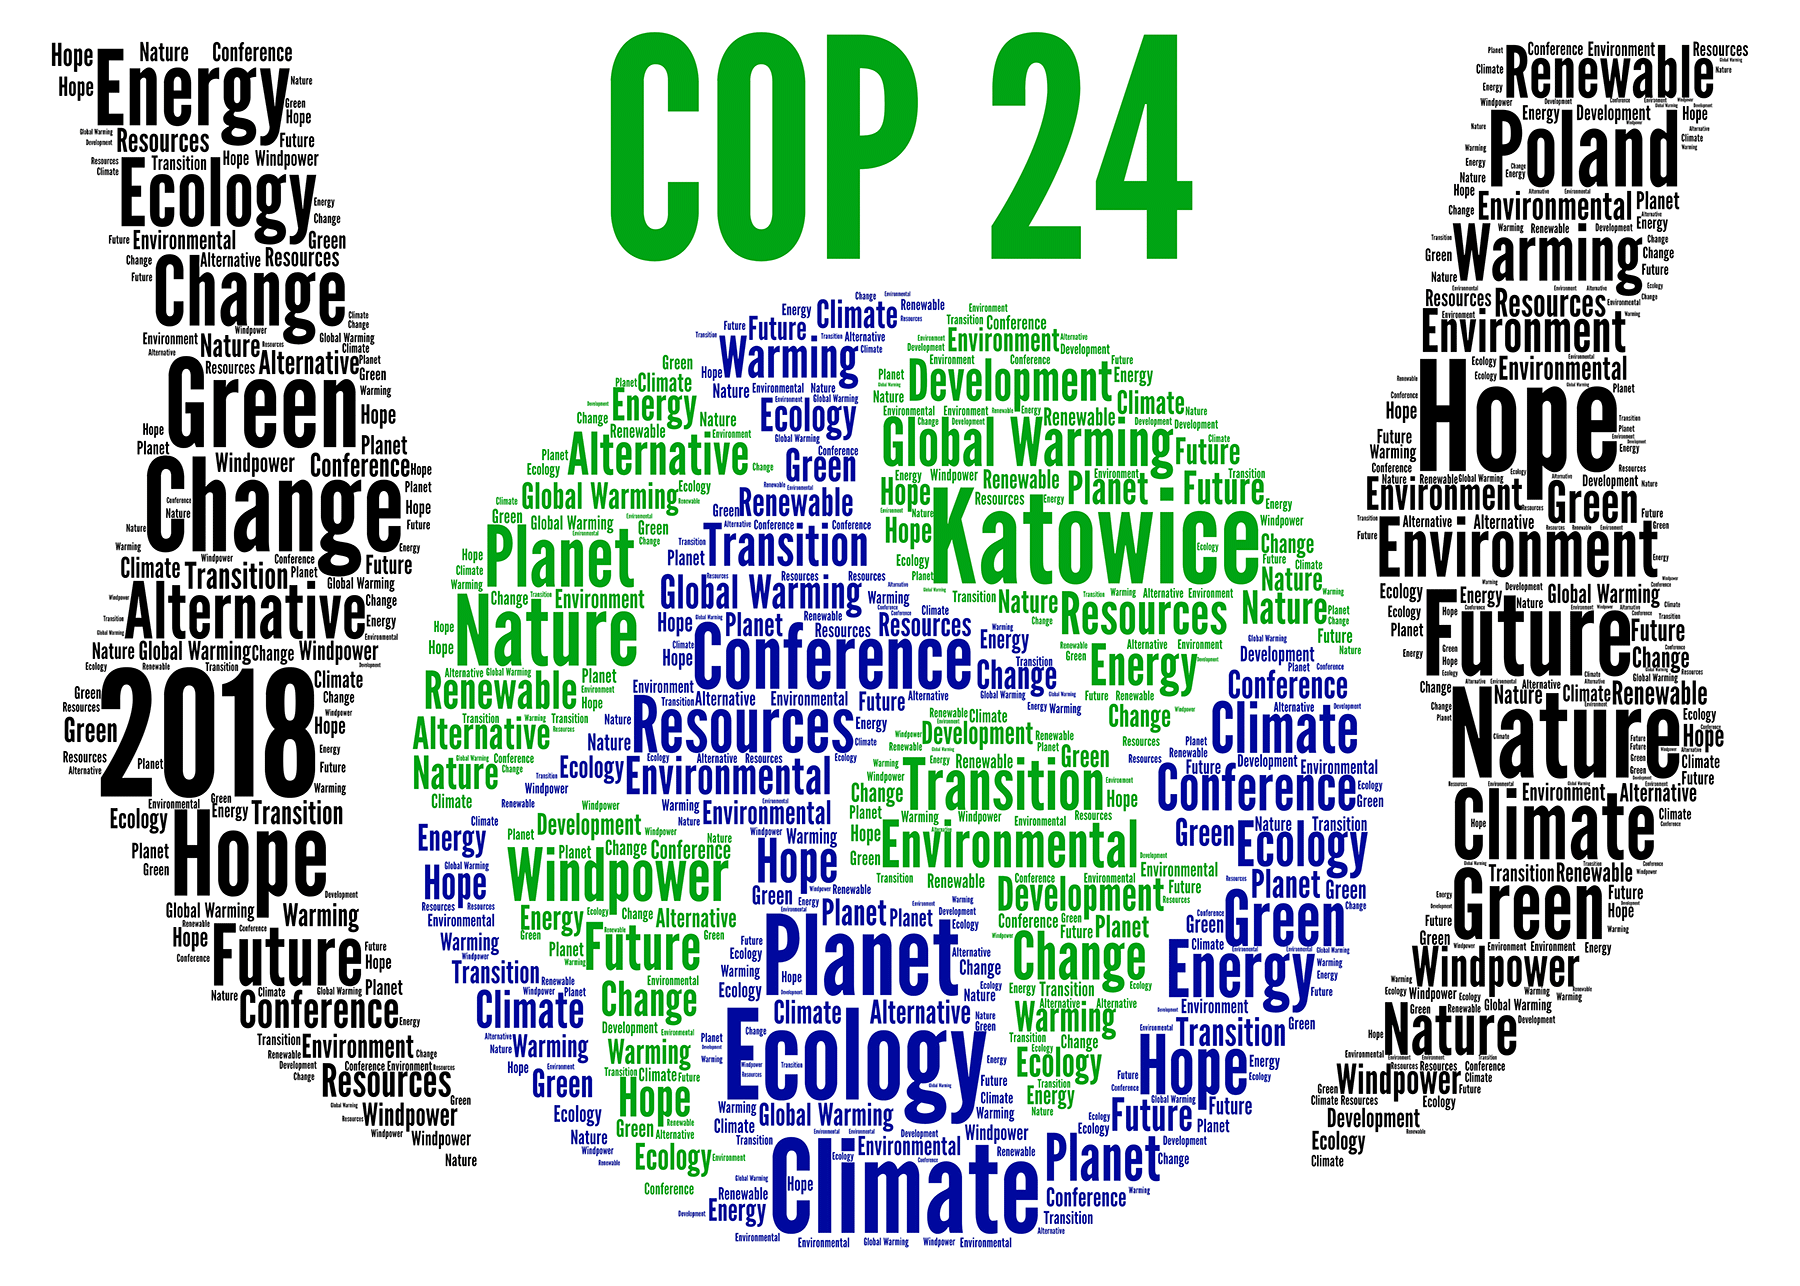 Μετά από δύο εβδομάδες διαπραγματεύσεων ολοκληρώθηκε η 24η διάσκεψη του ΟΗΕ για το κλίμα στο Κατοβίτσε της Πολωνίας. Η φετινή διάσκεψη είχε ως στόχο την συνδιαμόρφωση συγκεκριμένων κανόνων συνοδευόμενων από πολιτικές […]